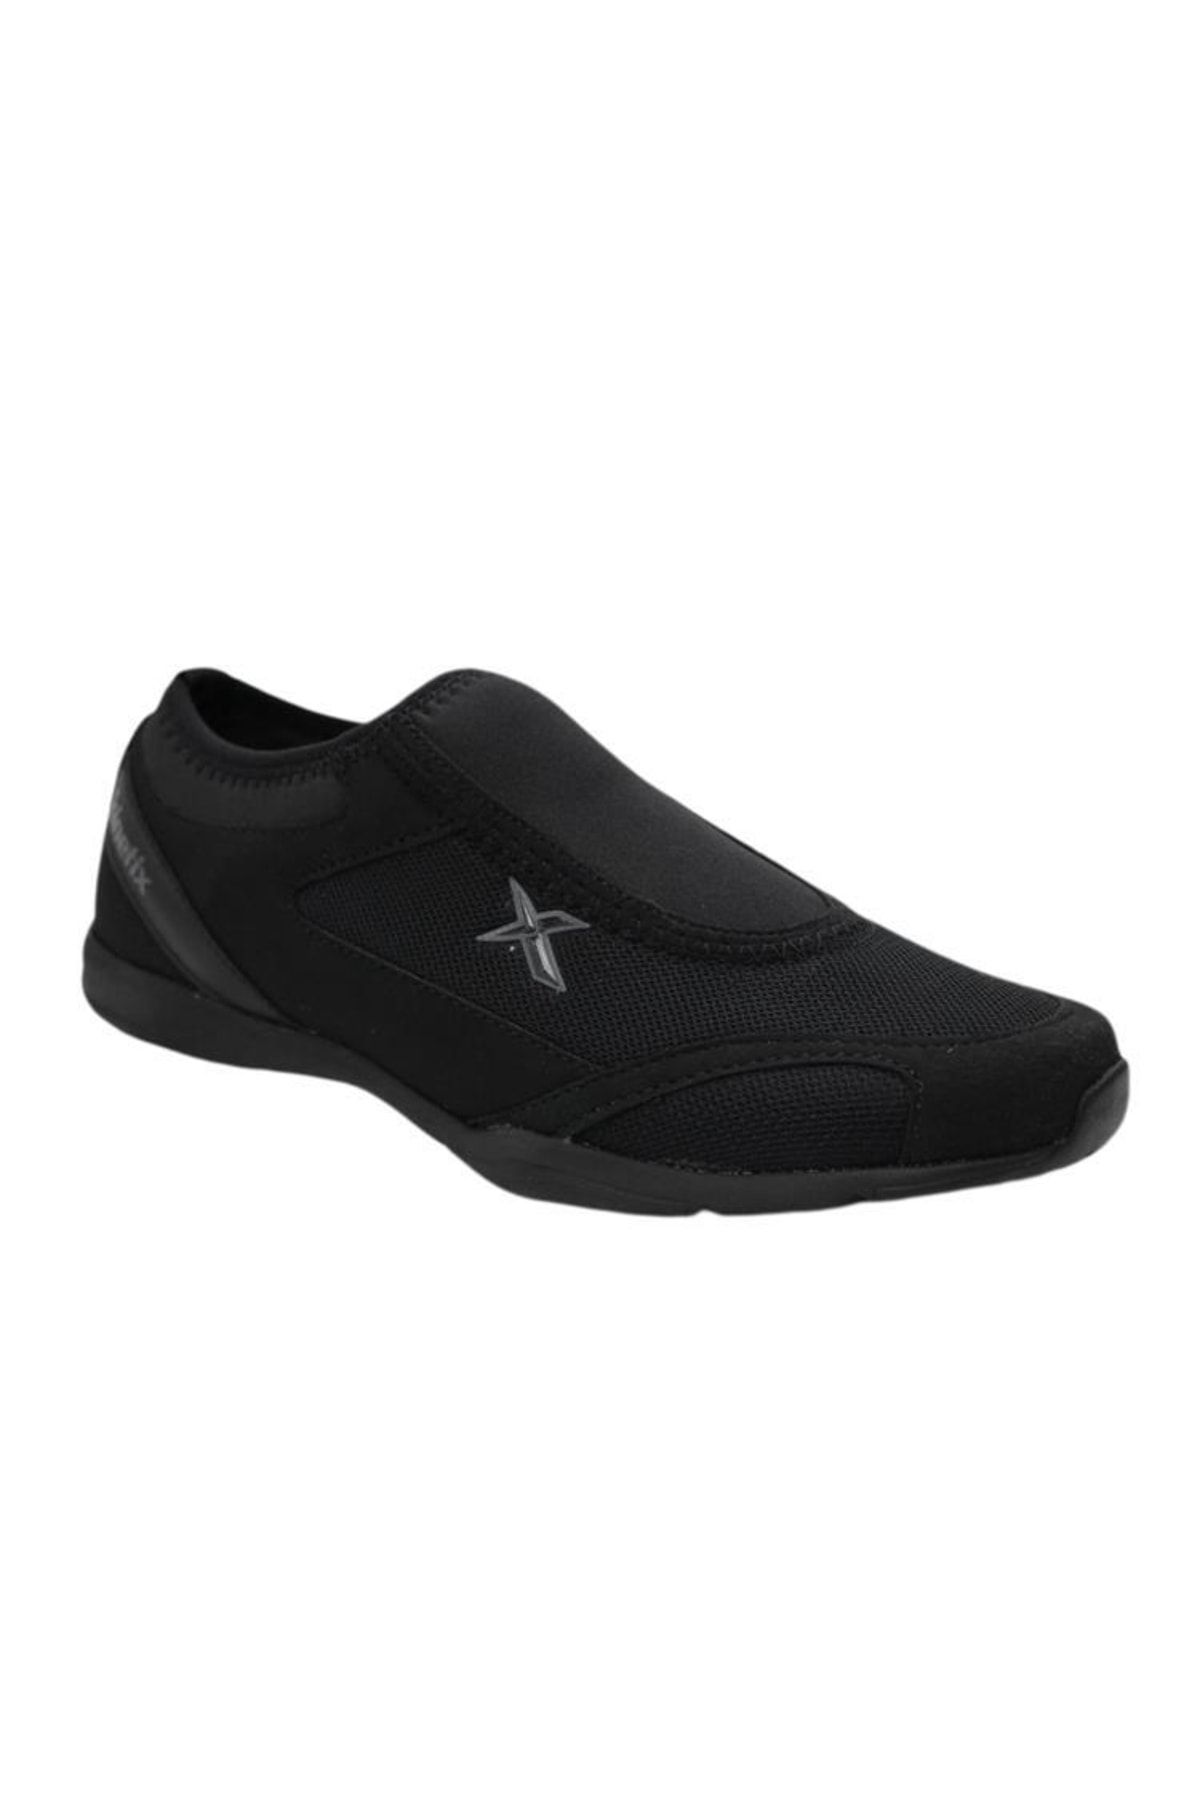 Kinetix Macon Tx 3fx Anatomik Esnek Bağçıksız Erkek Spor Ayakkabı